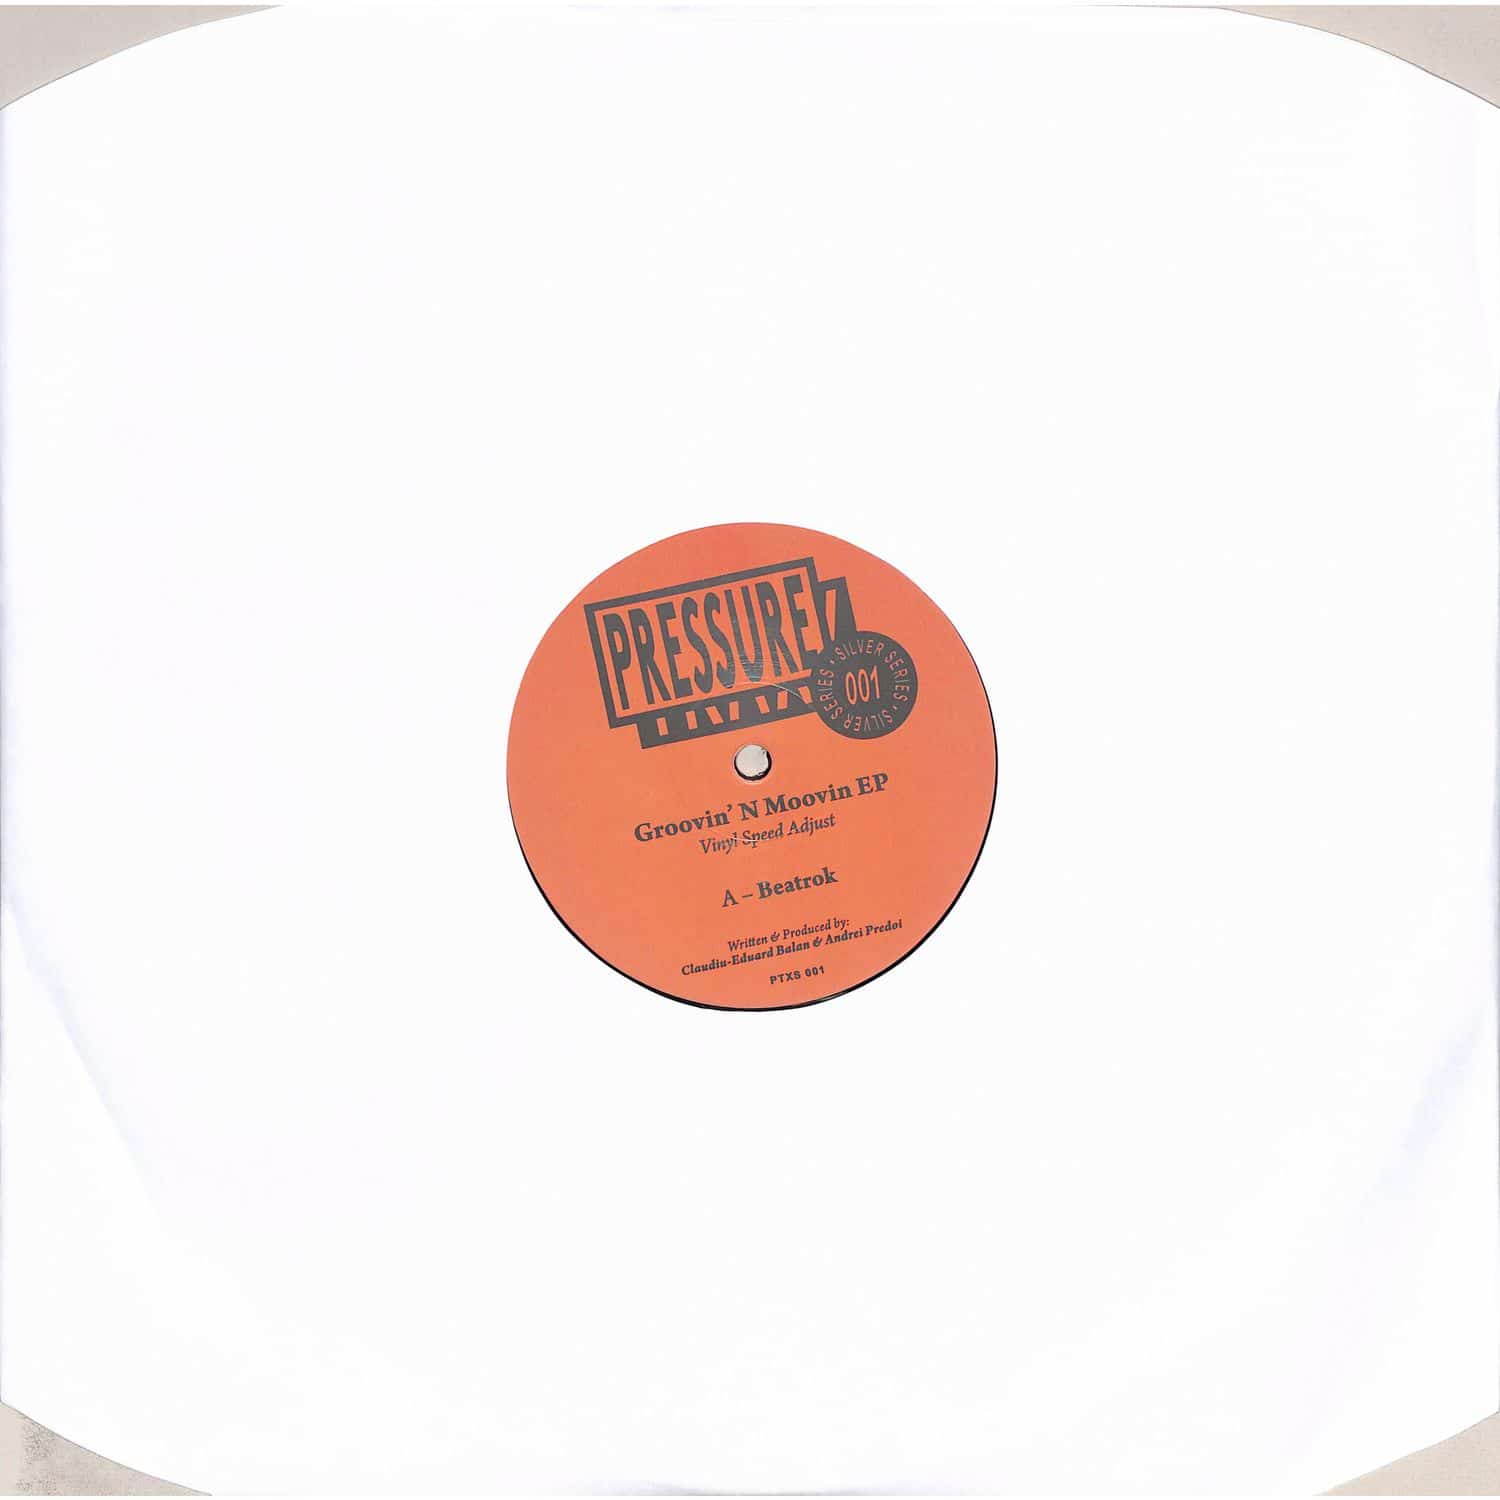 Vinyl Speed Adjust - GROOVIN N MOOVIN EP 